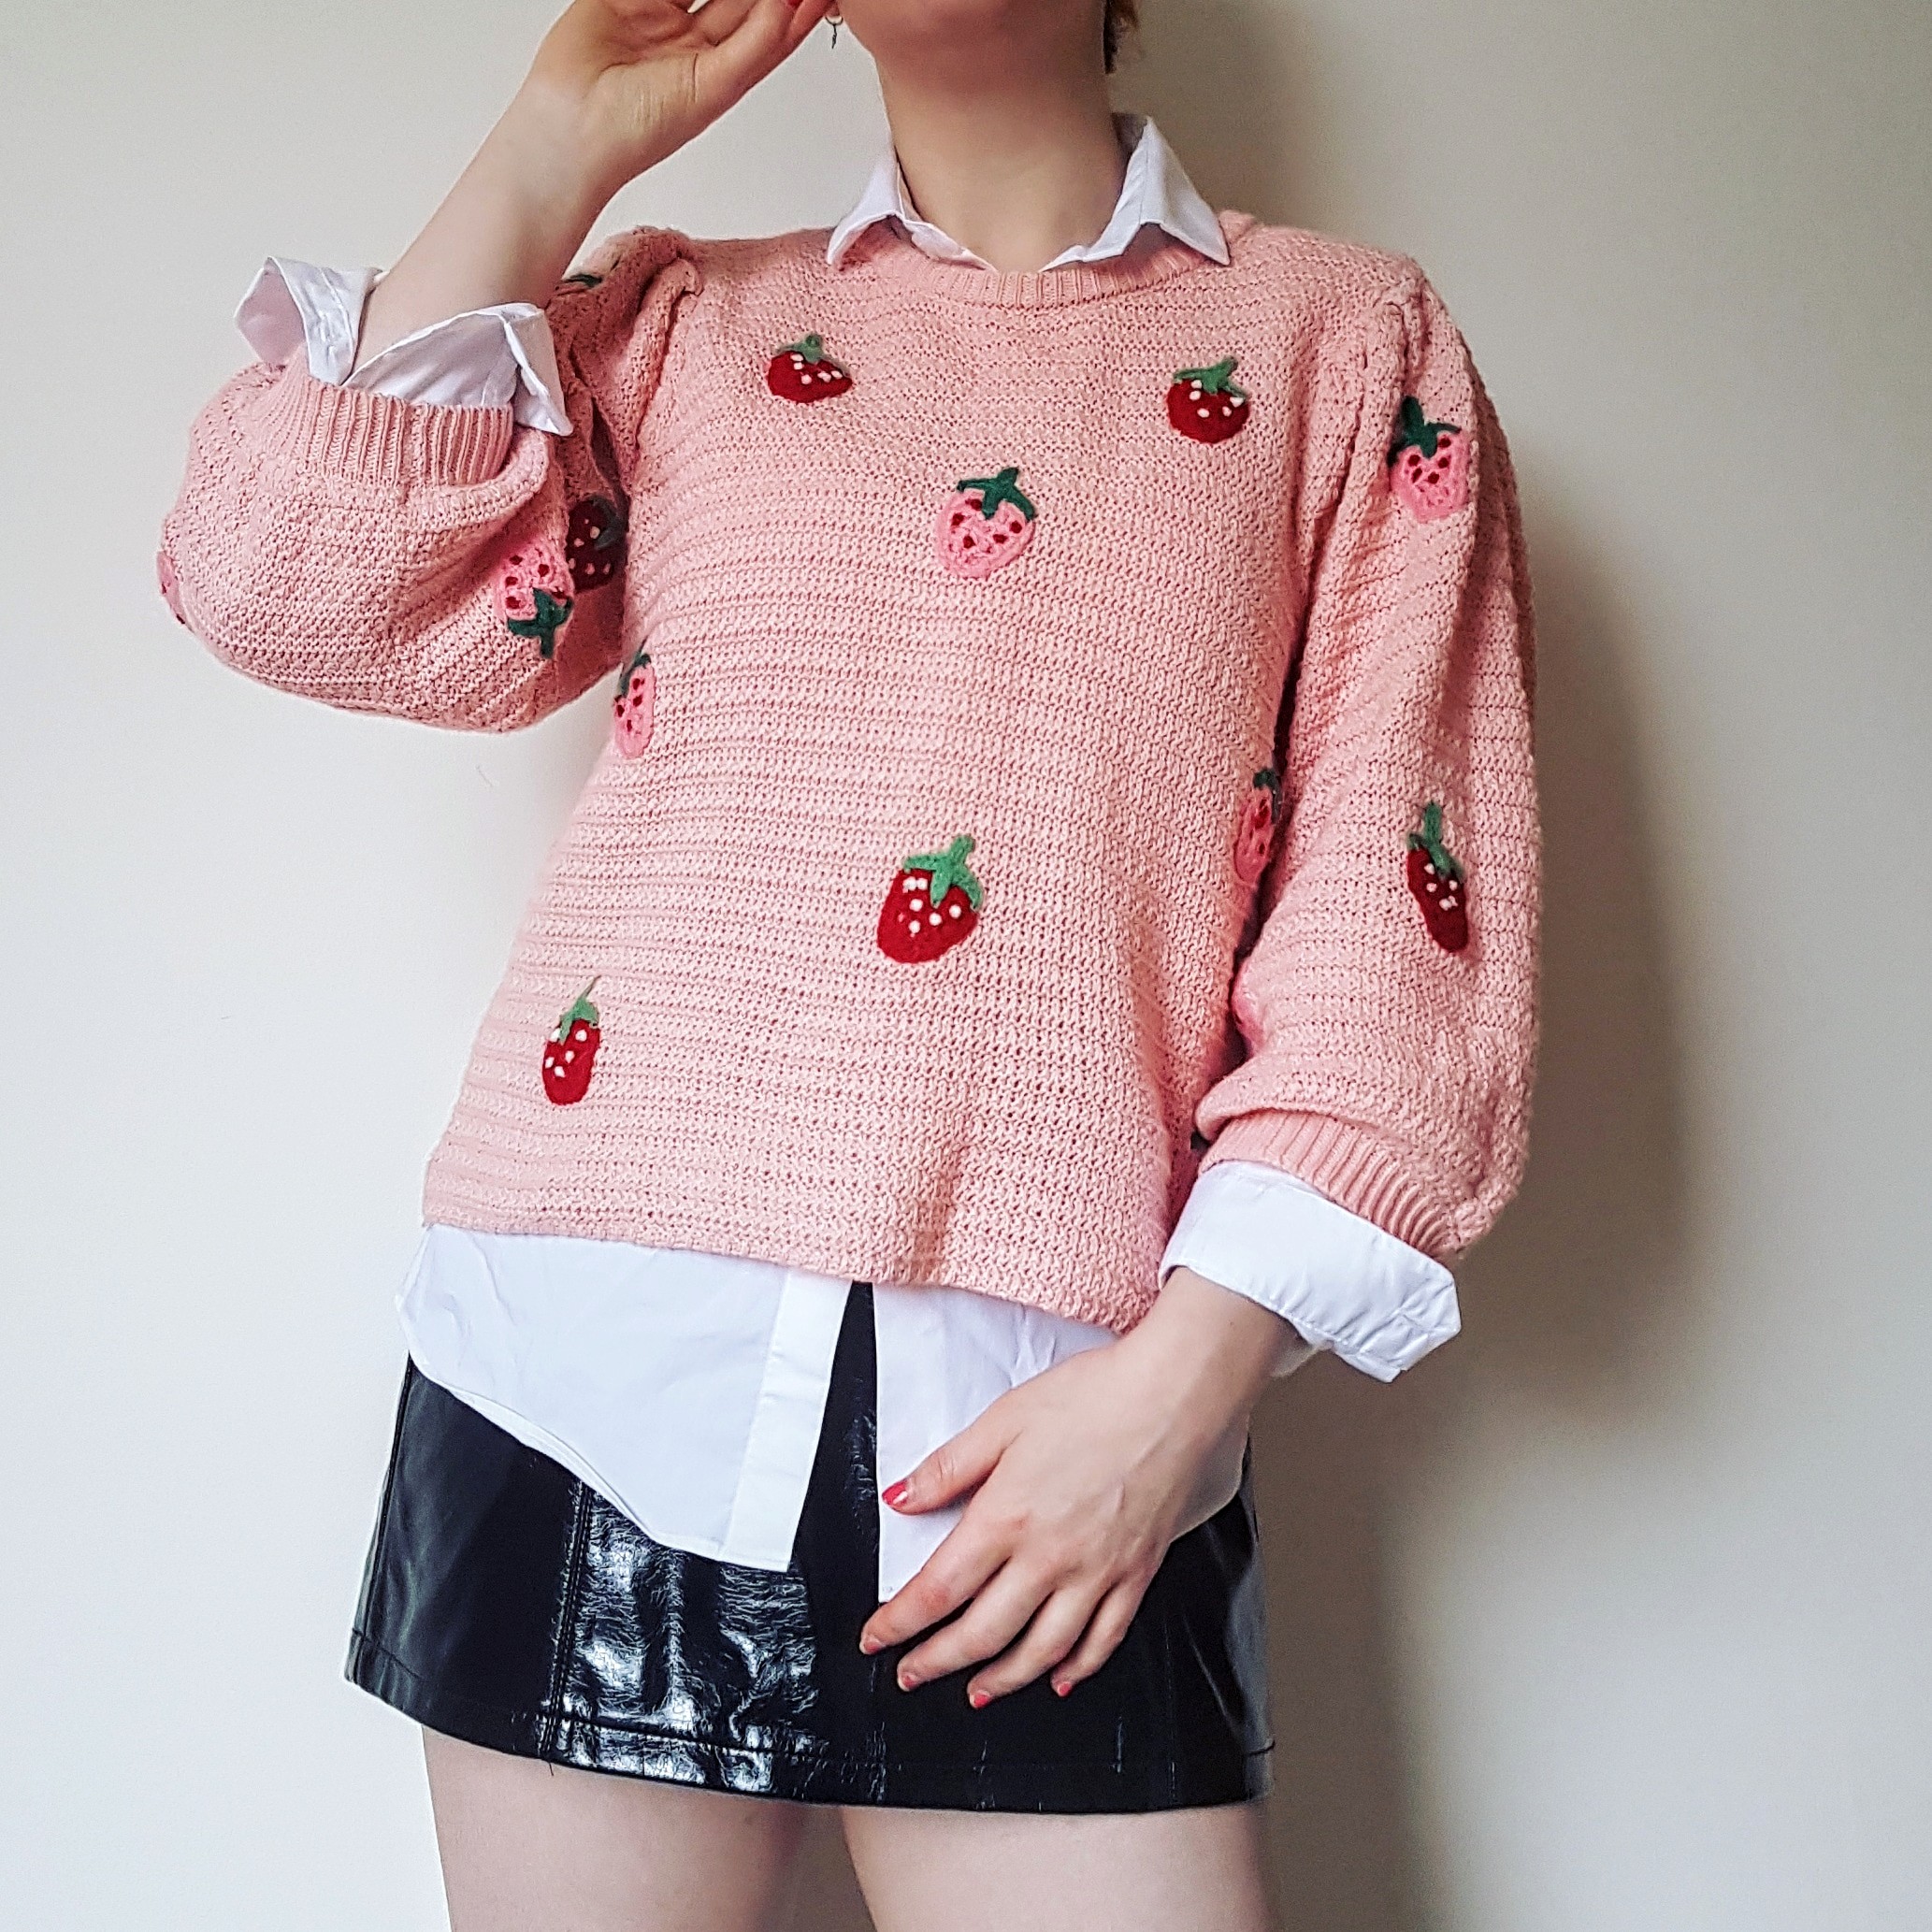 pvc skirt strawberry jumper